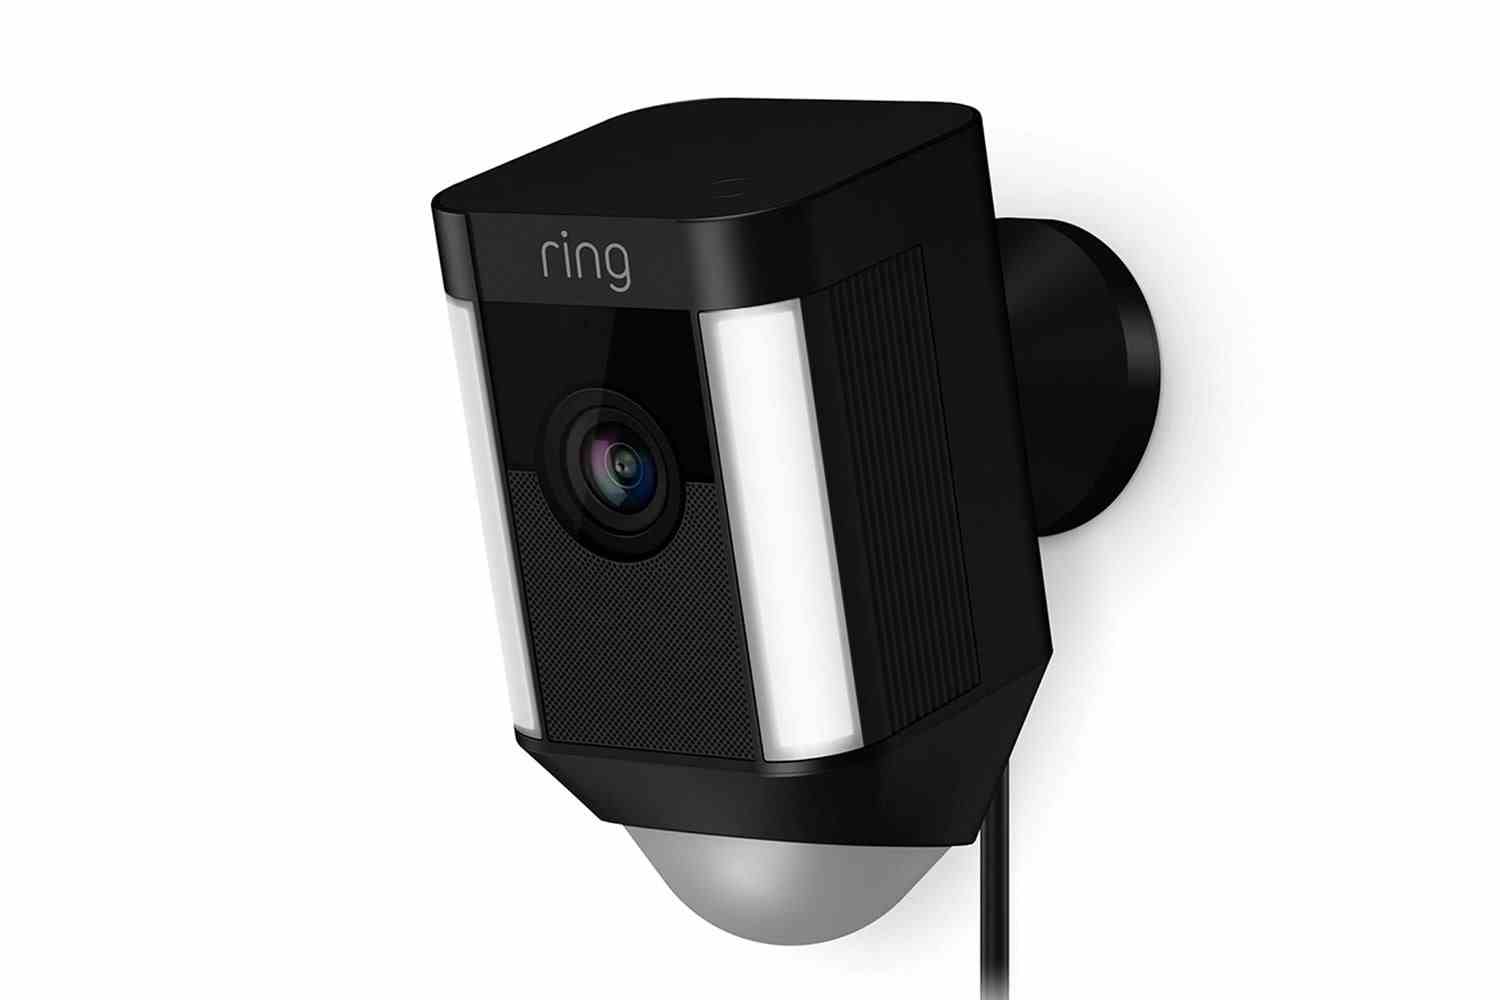 Ring Spotlight Cam Wired